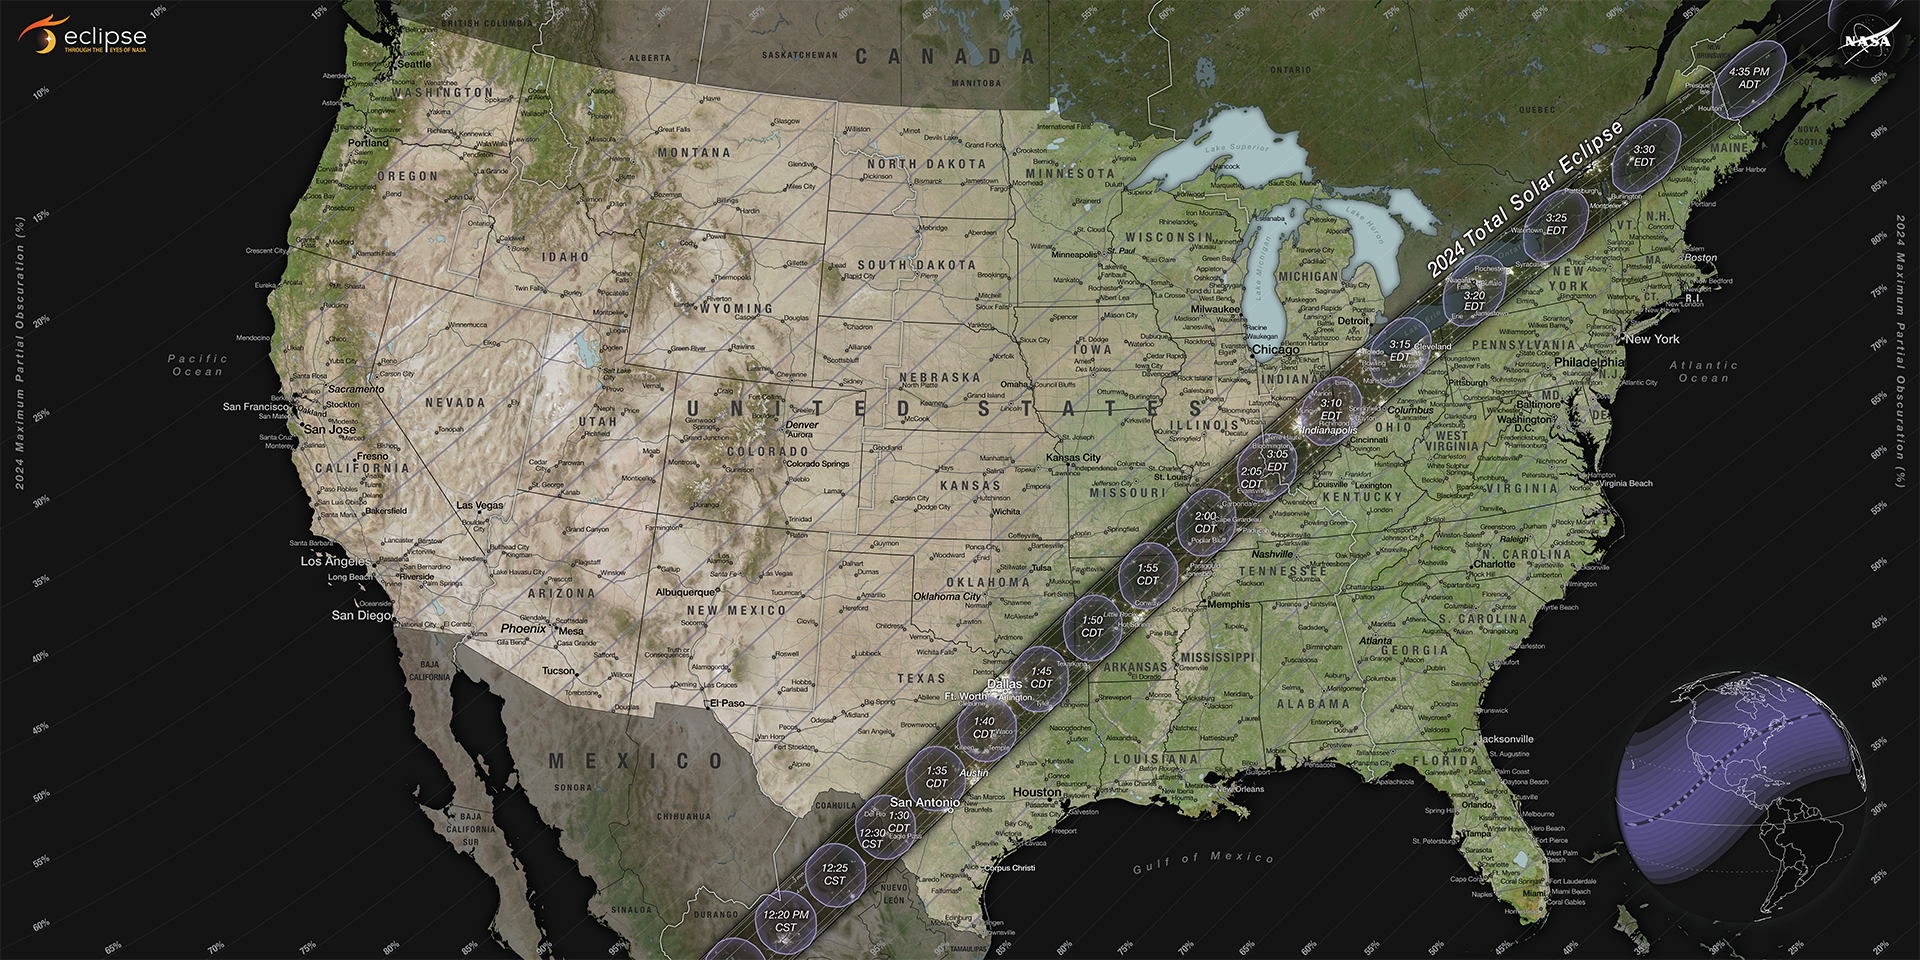 Las personas que se encuentren en la trayectoria de la totalidad, que se extiende desde Texas hasta Maine, tendrán la oportunidad de ver un eclipse solar total; fuera de esta trayectoria, espectadores podrán ver un eclipse solar parcial.